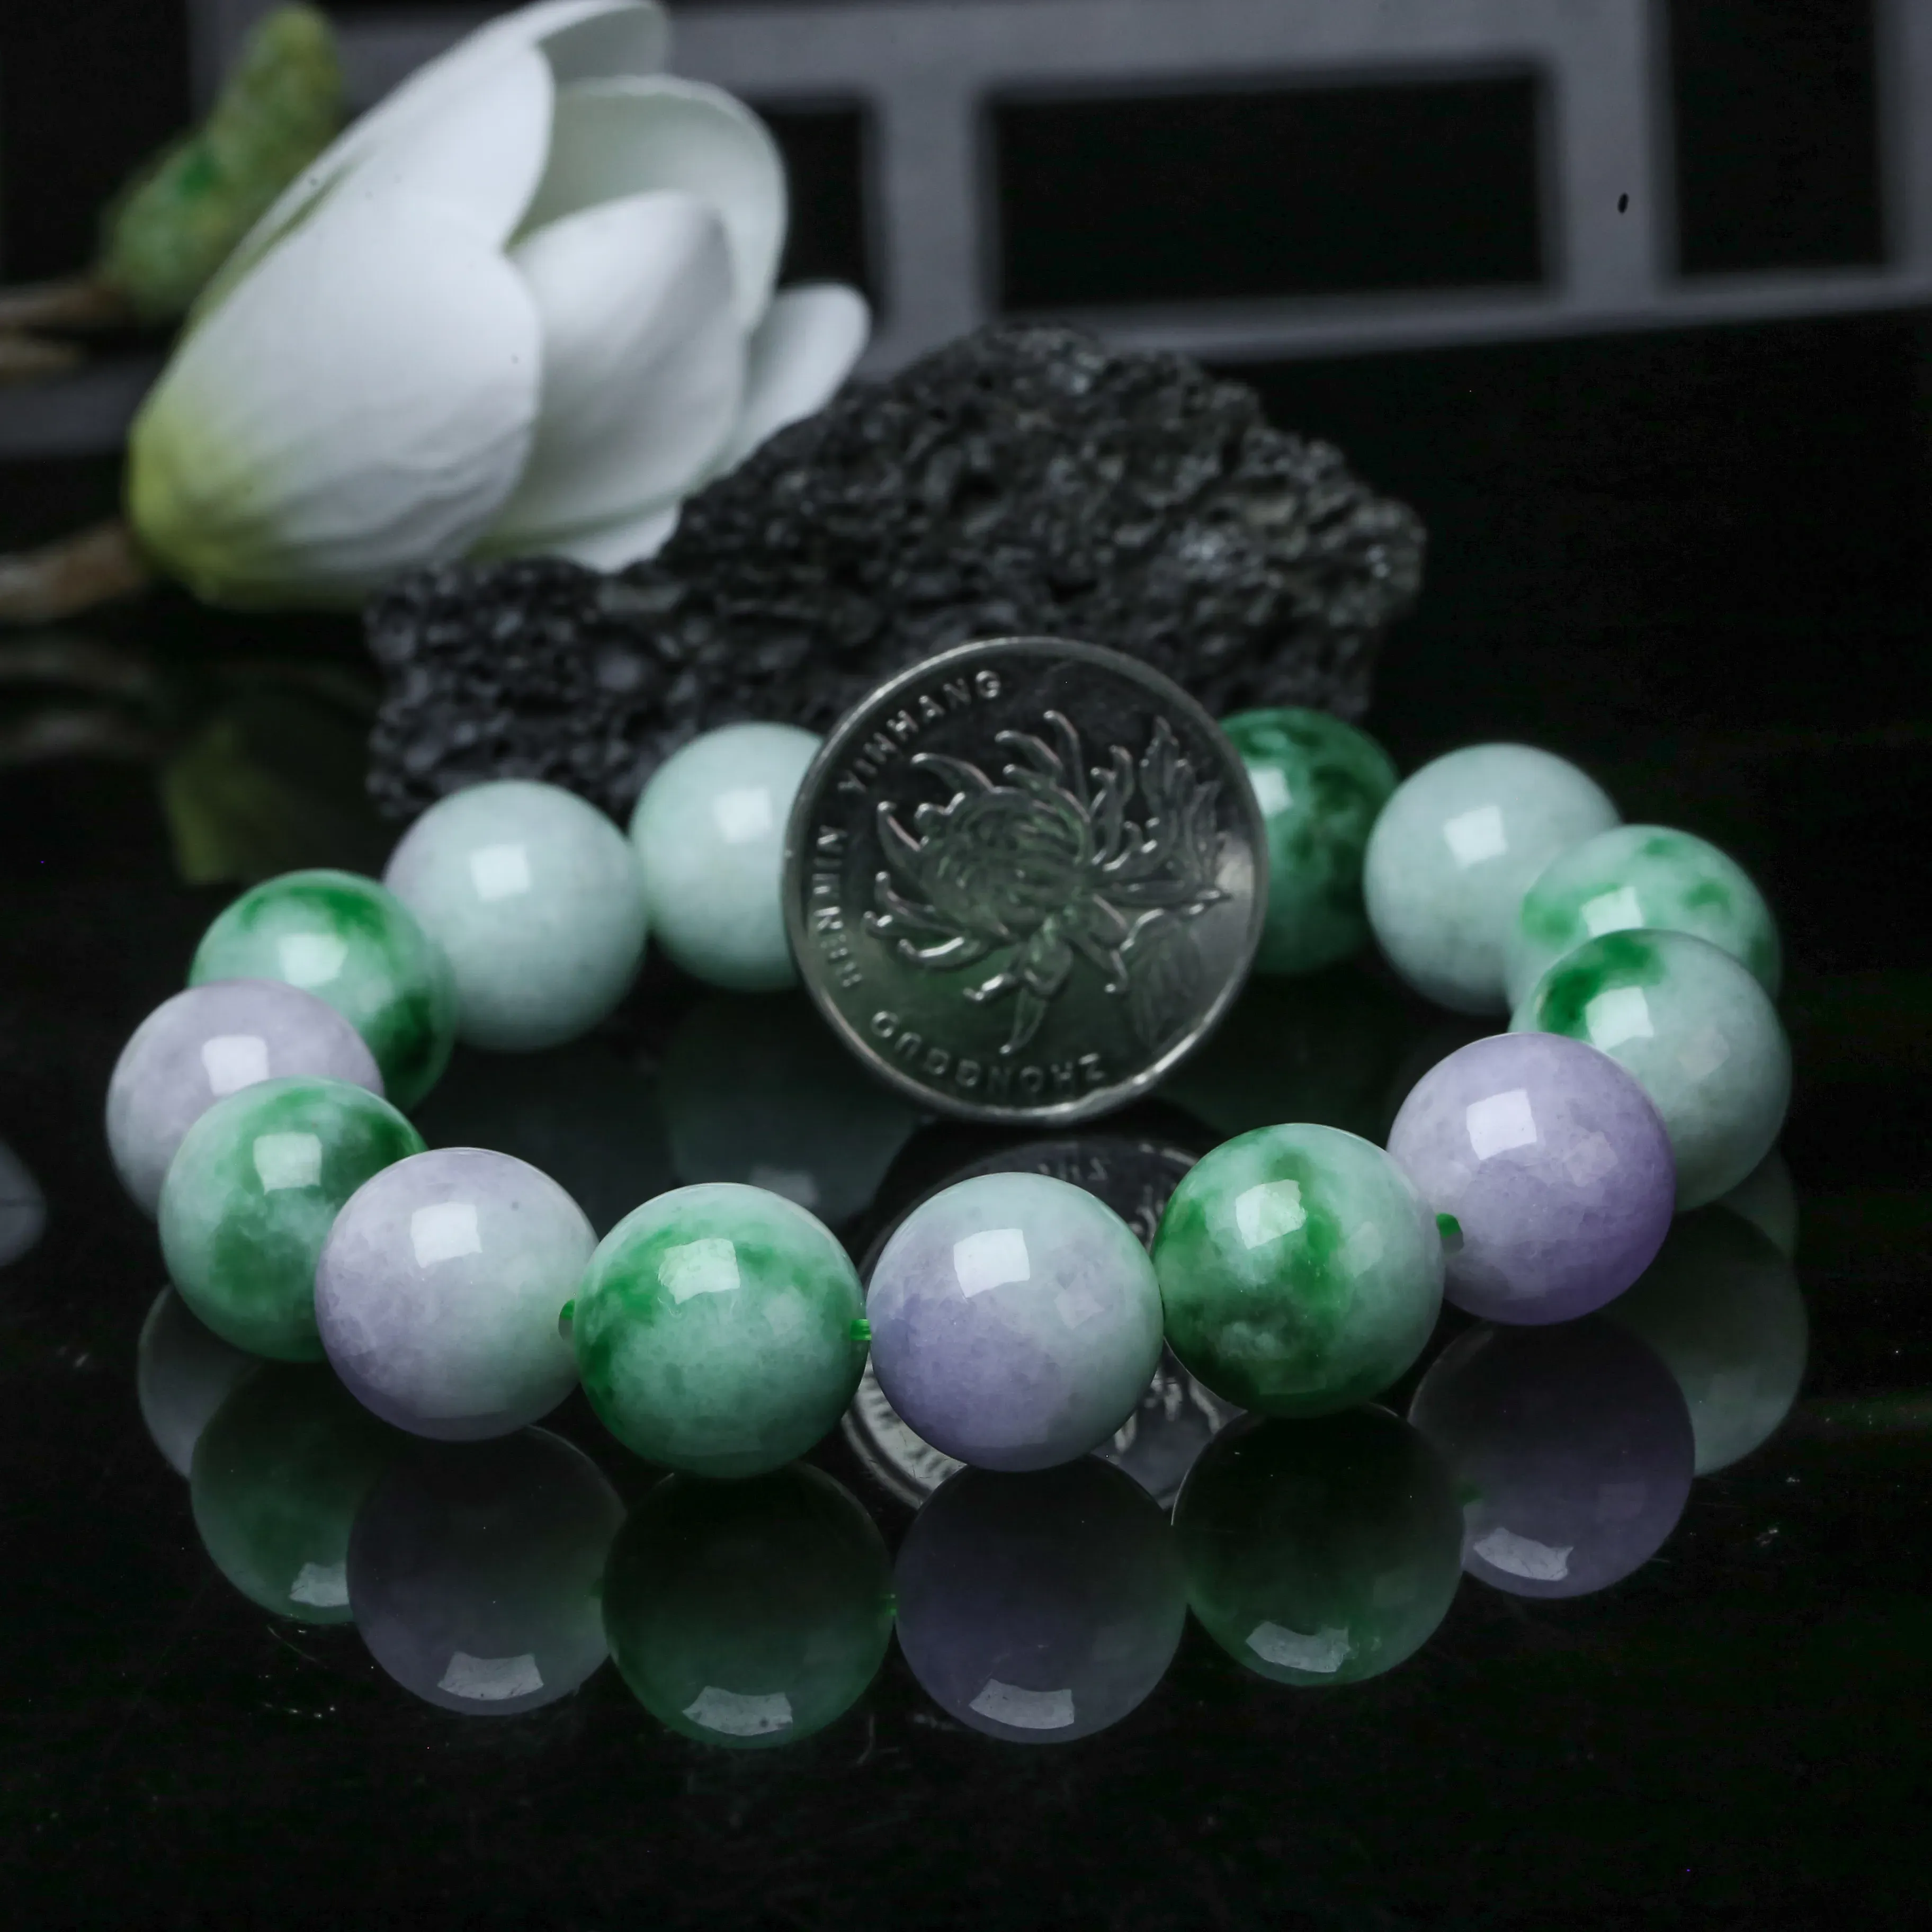 春彩翡翠圆珠手串，共14颗珠子，取其中一颗珠尺寸大约14.1mm，玉质莹润，饱满圆润，上手佩戴优雅大方。